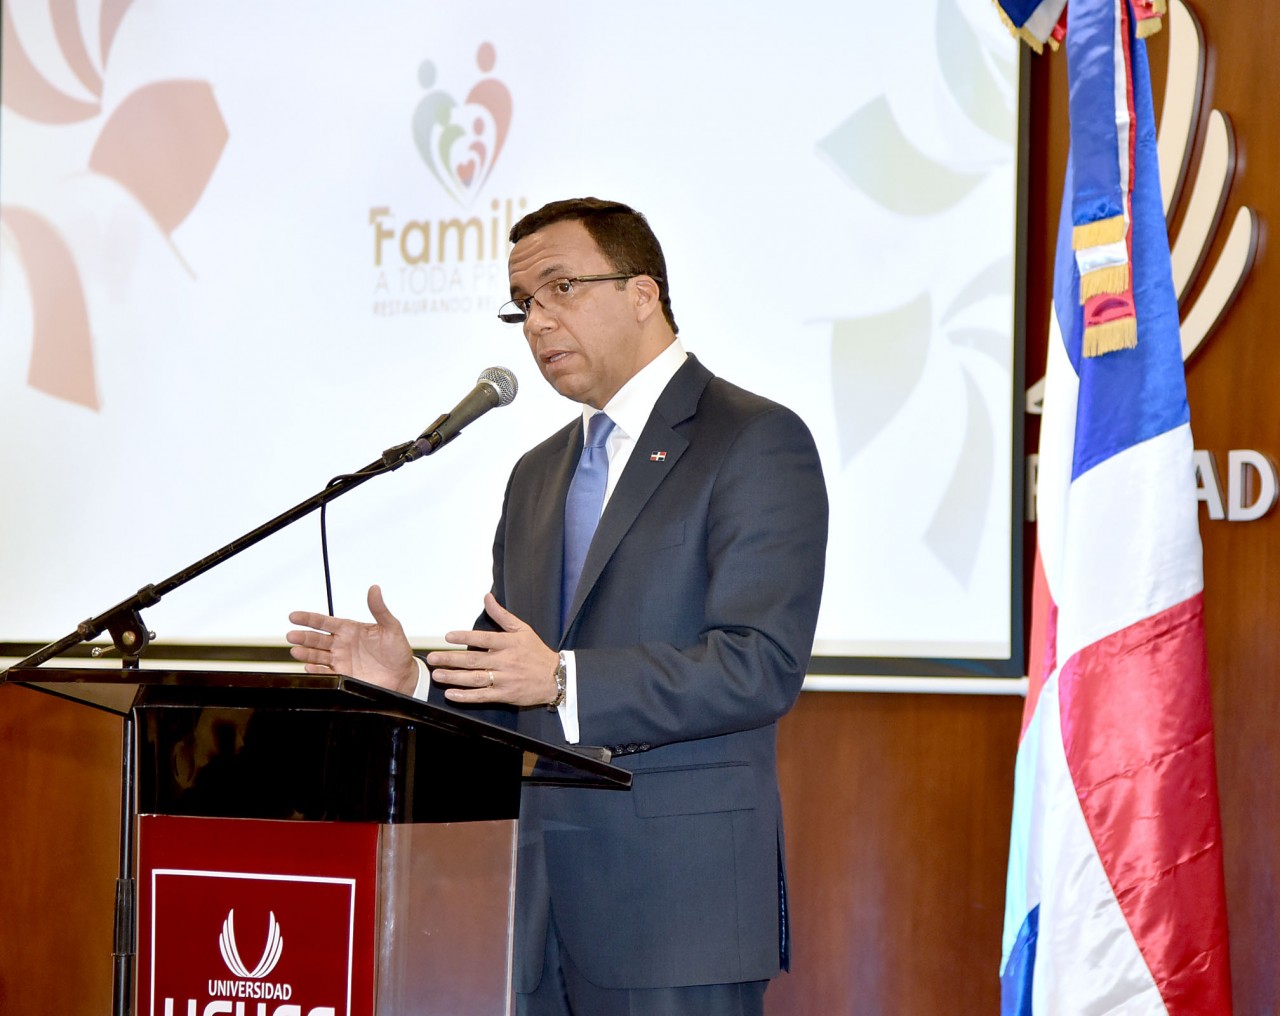  imagen Ministro Andrés Navarro en podium como orador invitado en IV Congreso “Familia a toda Prueba: Restaurando Relaciones”. 